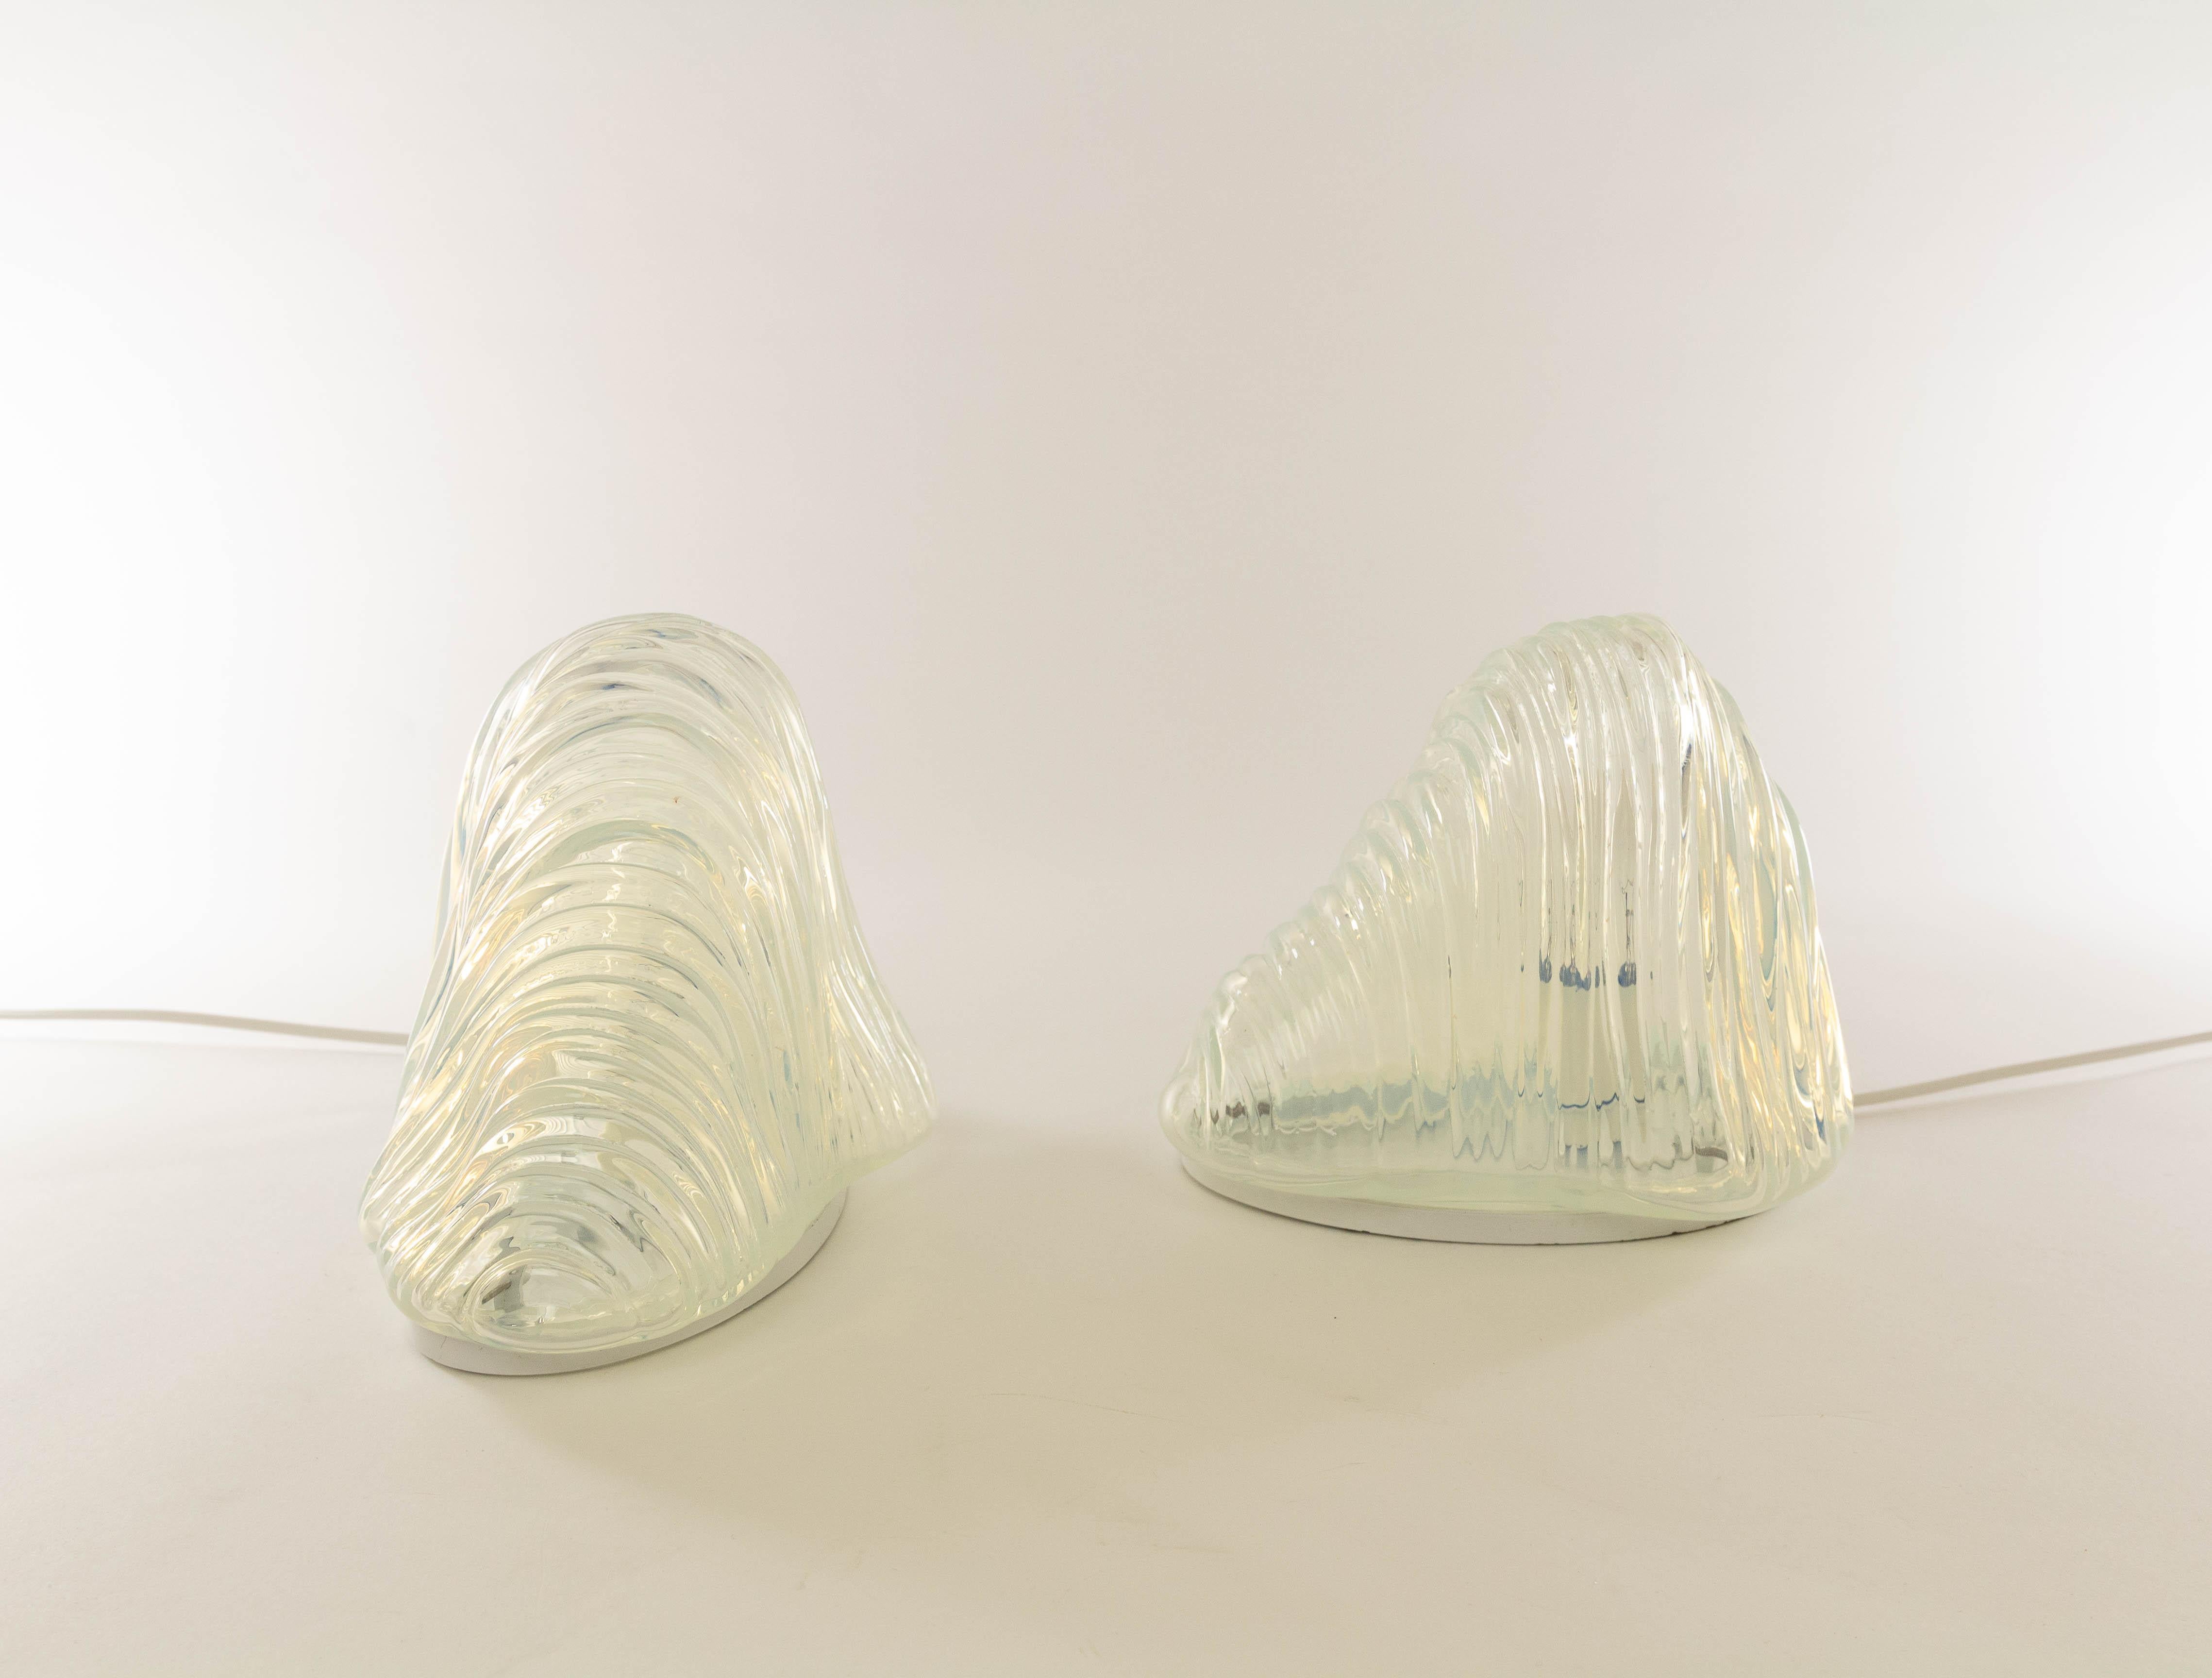 Italian Pair of Iceberg Table Lamps by Carlo Nason for A.V. Mazzega, 1960s